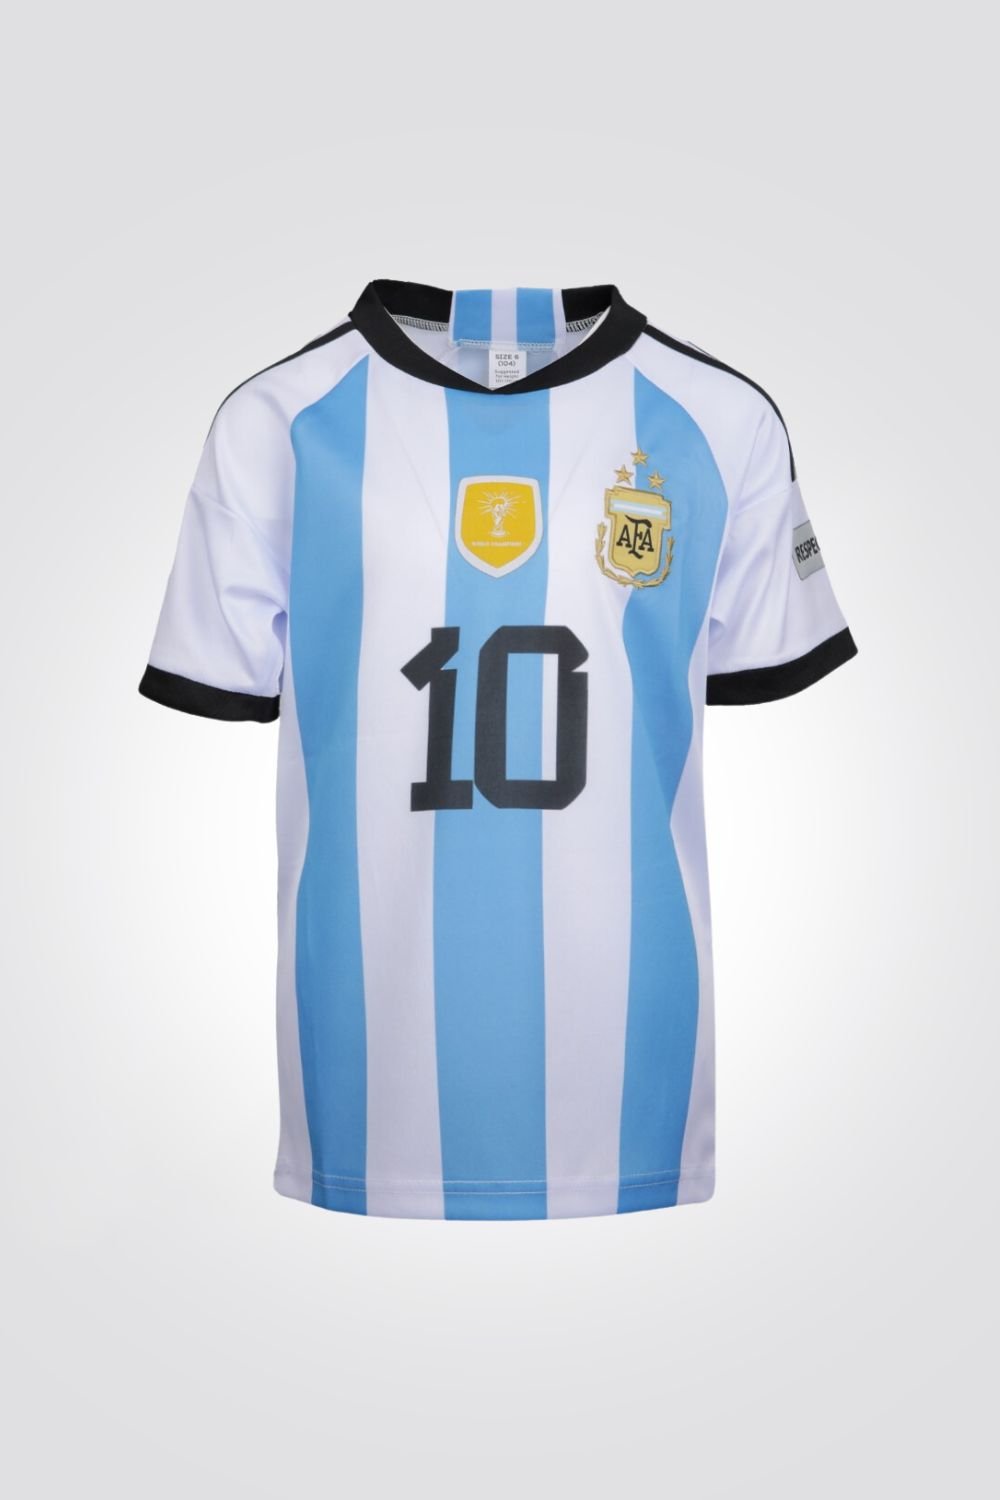 MASHBIR//365 - חליפת ילדים מדי ארגנטינה כדורגל מסי - MASHBIR//365